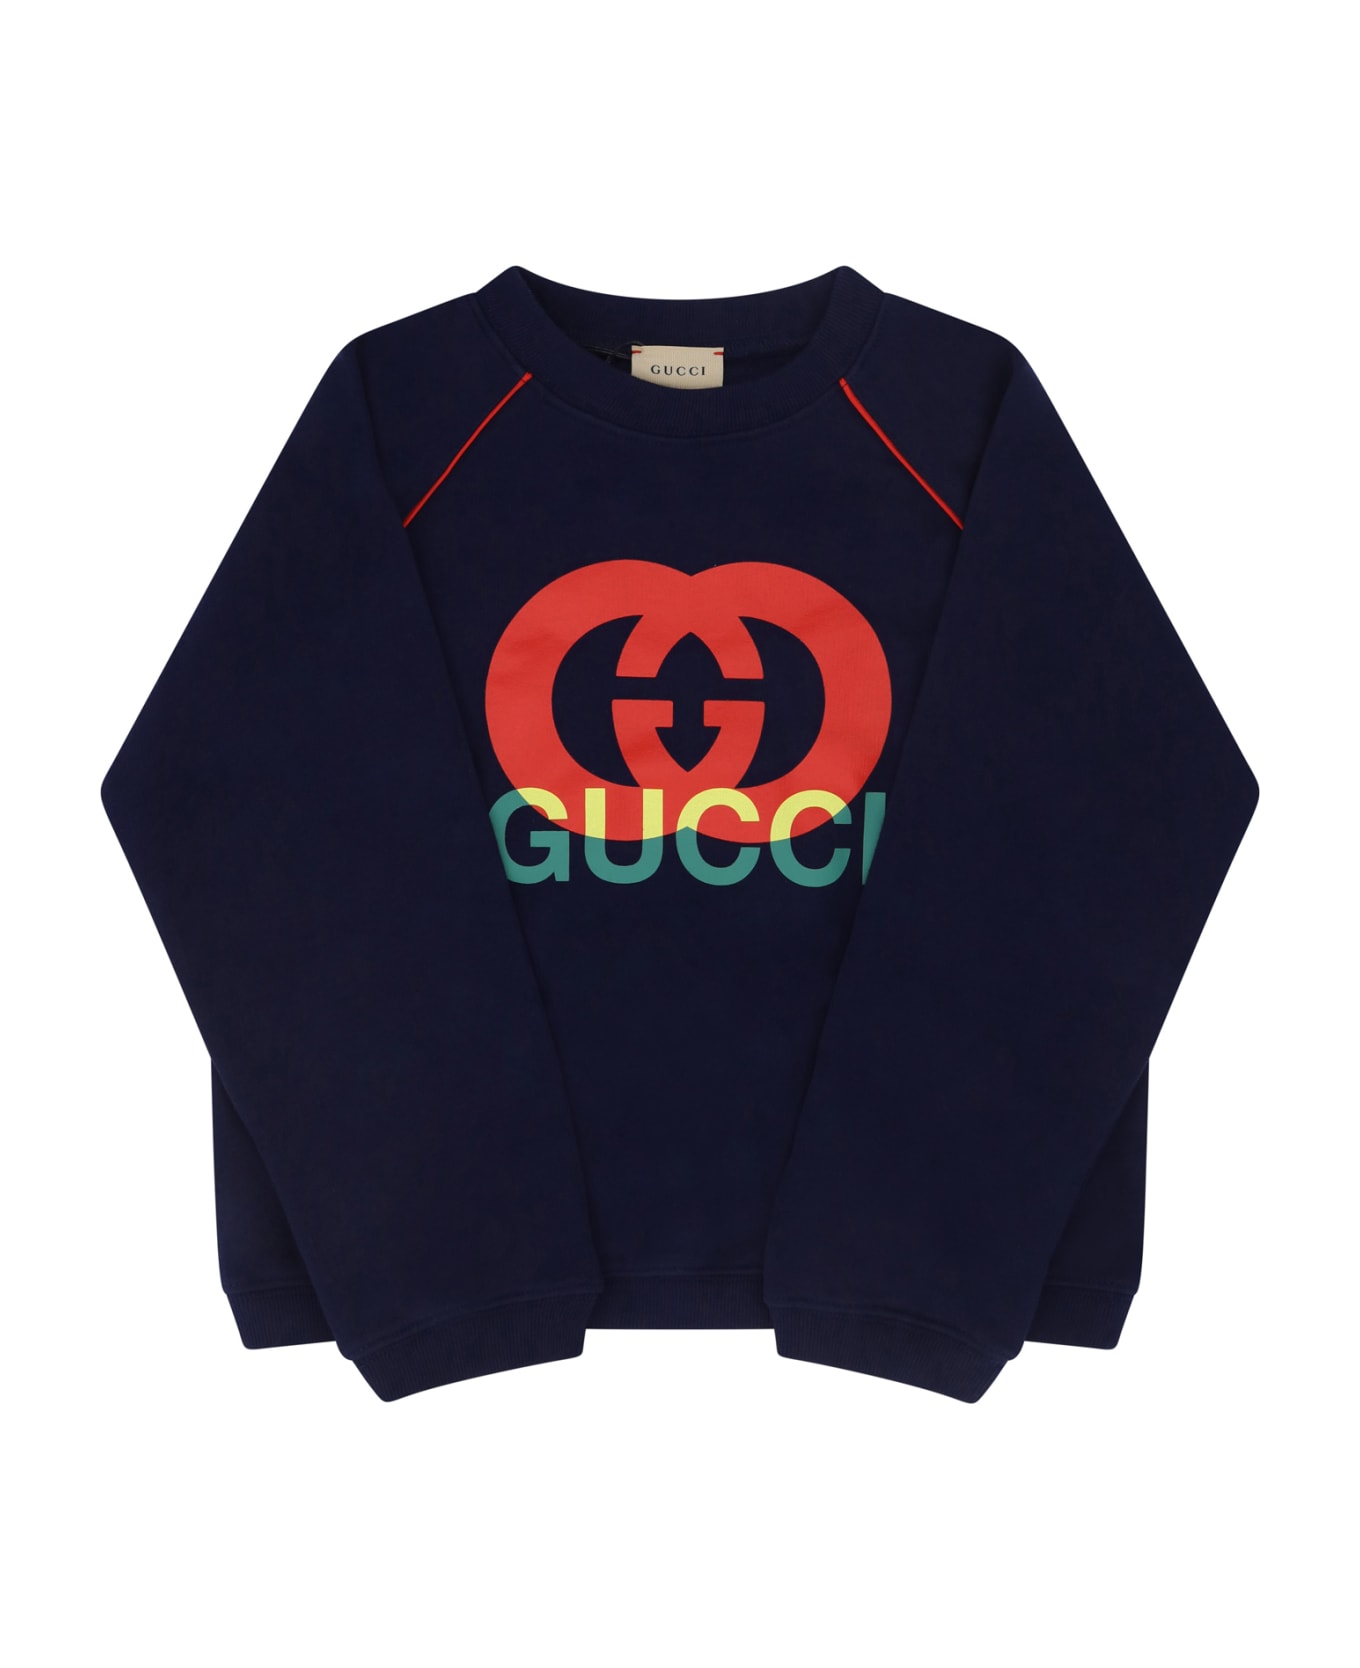 Gucci Sweatshirt For Boy